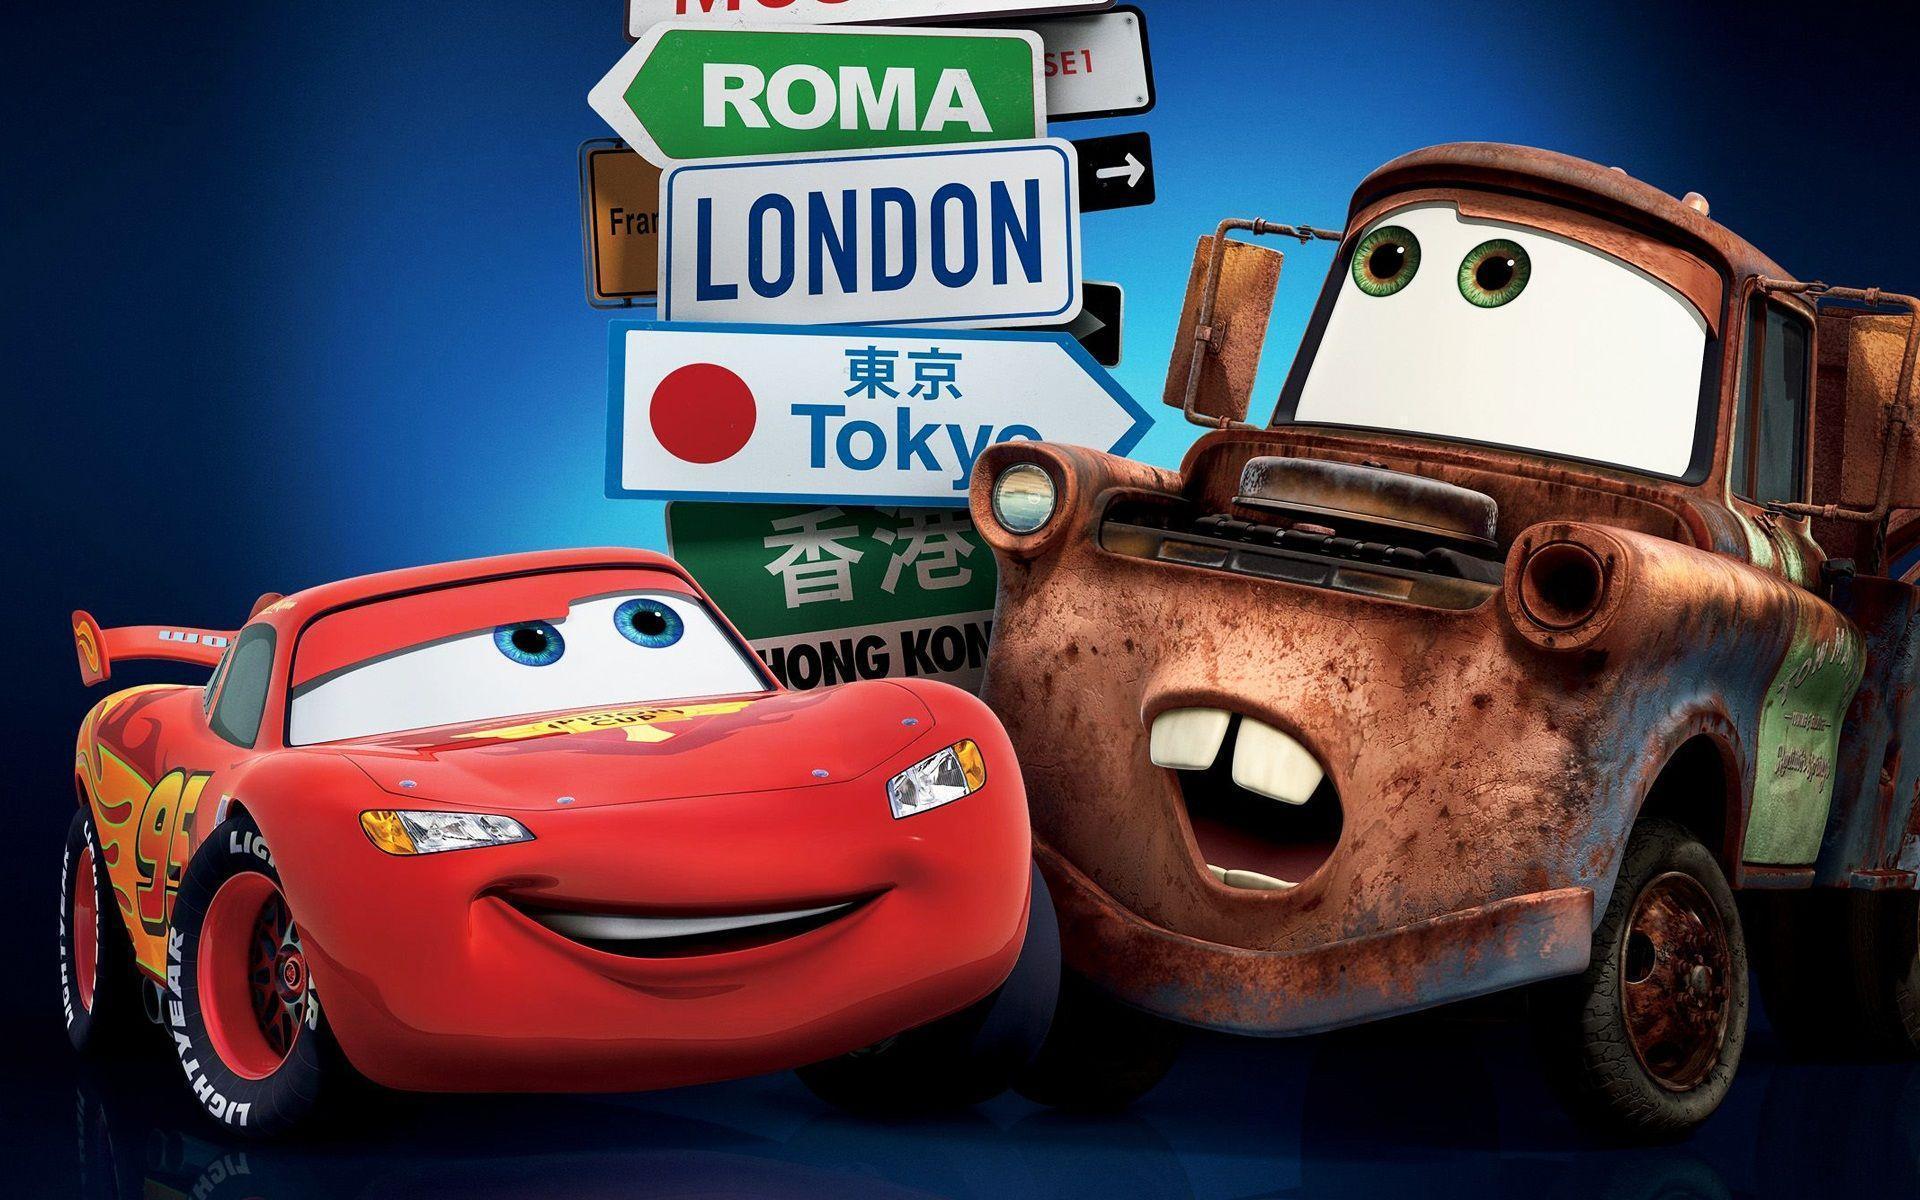 Cars Disney Pixar Cars 2 Full HD Wallpaper Image for iOS 7